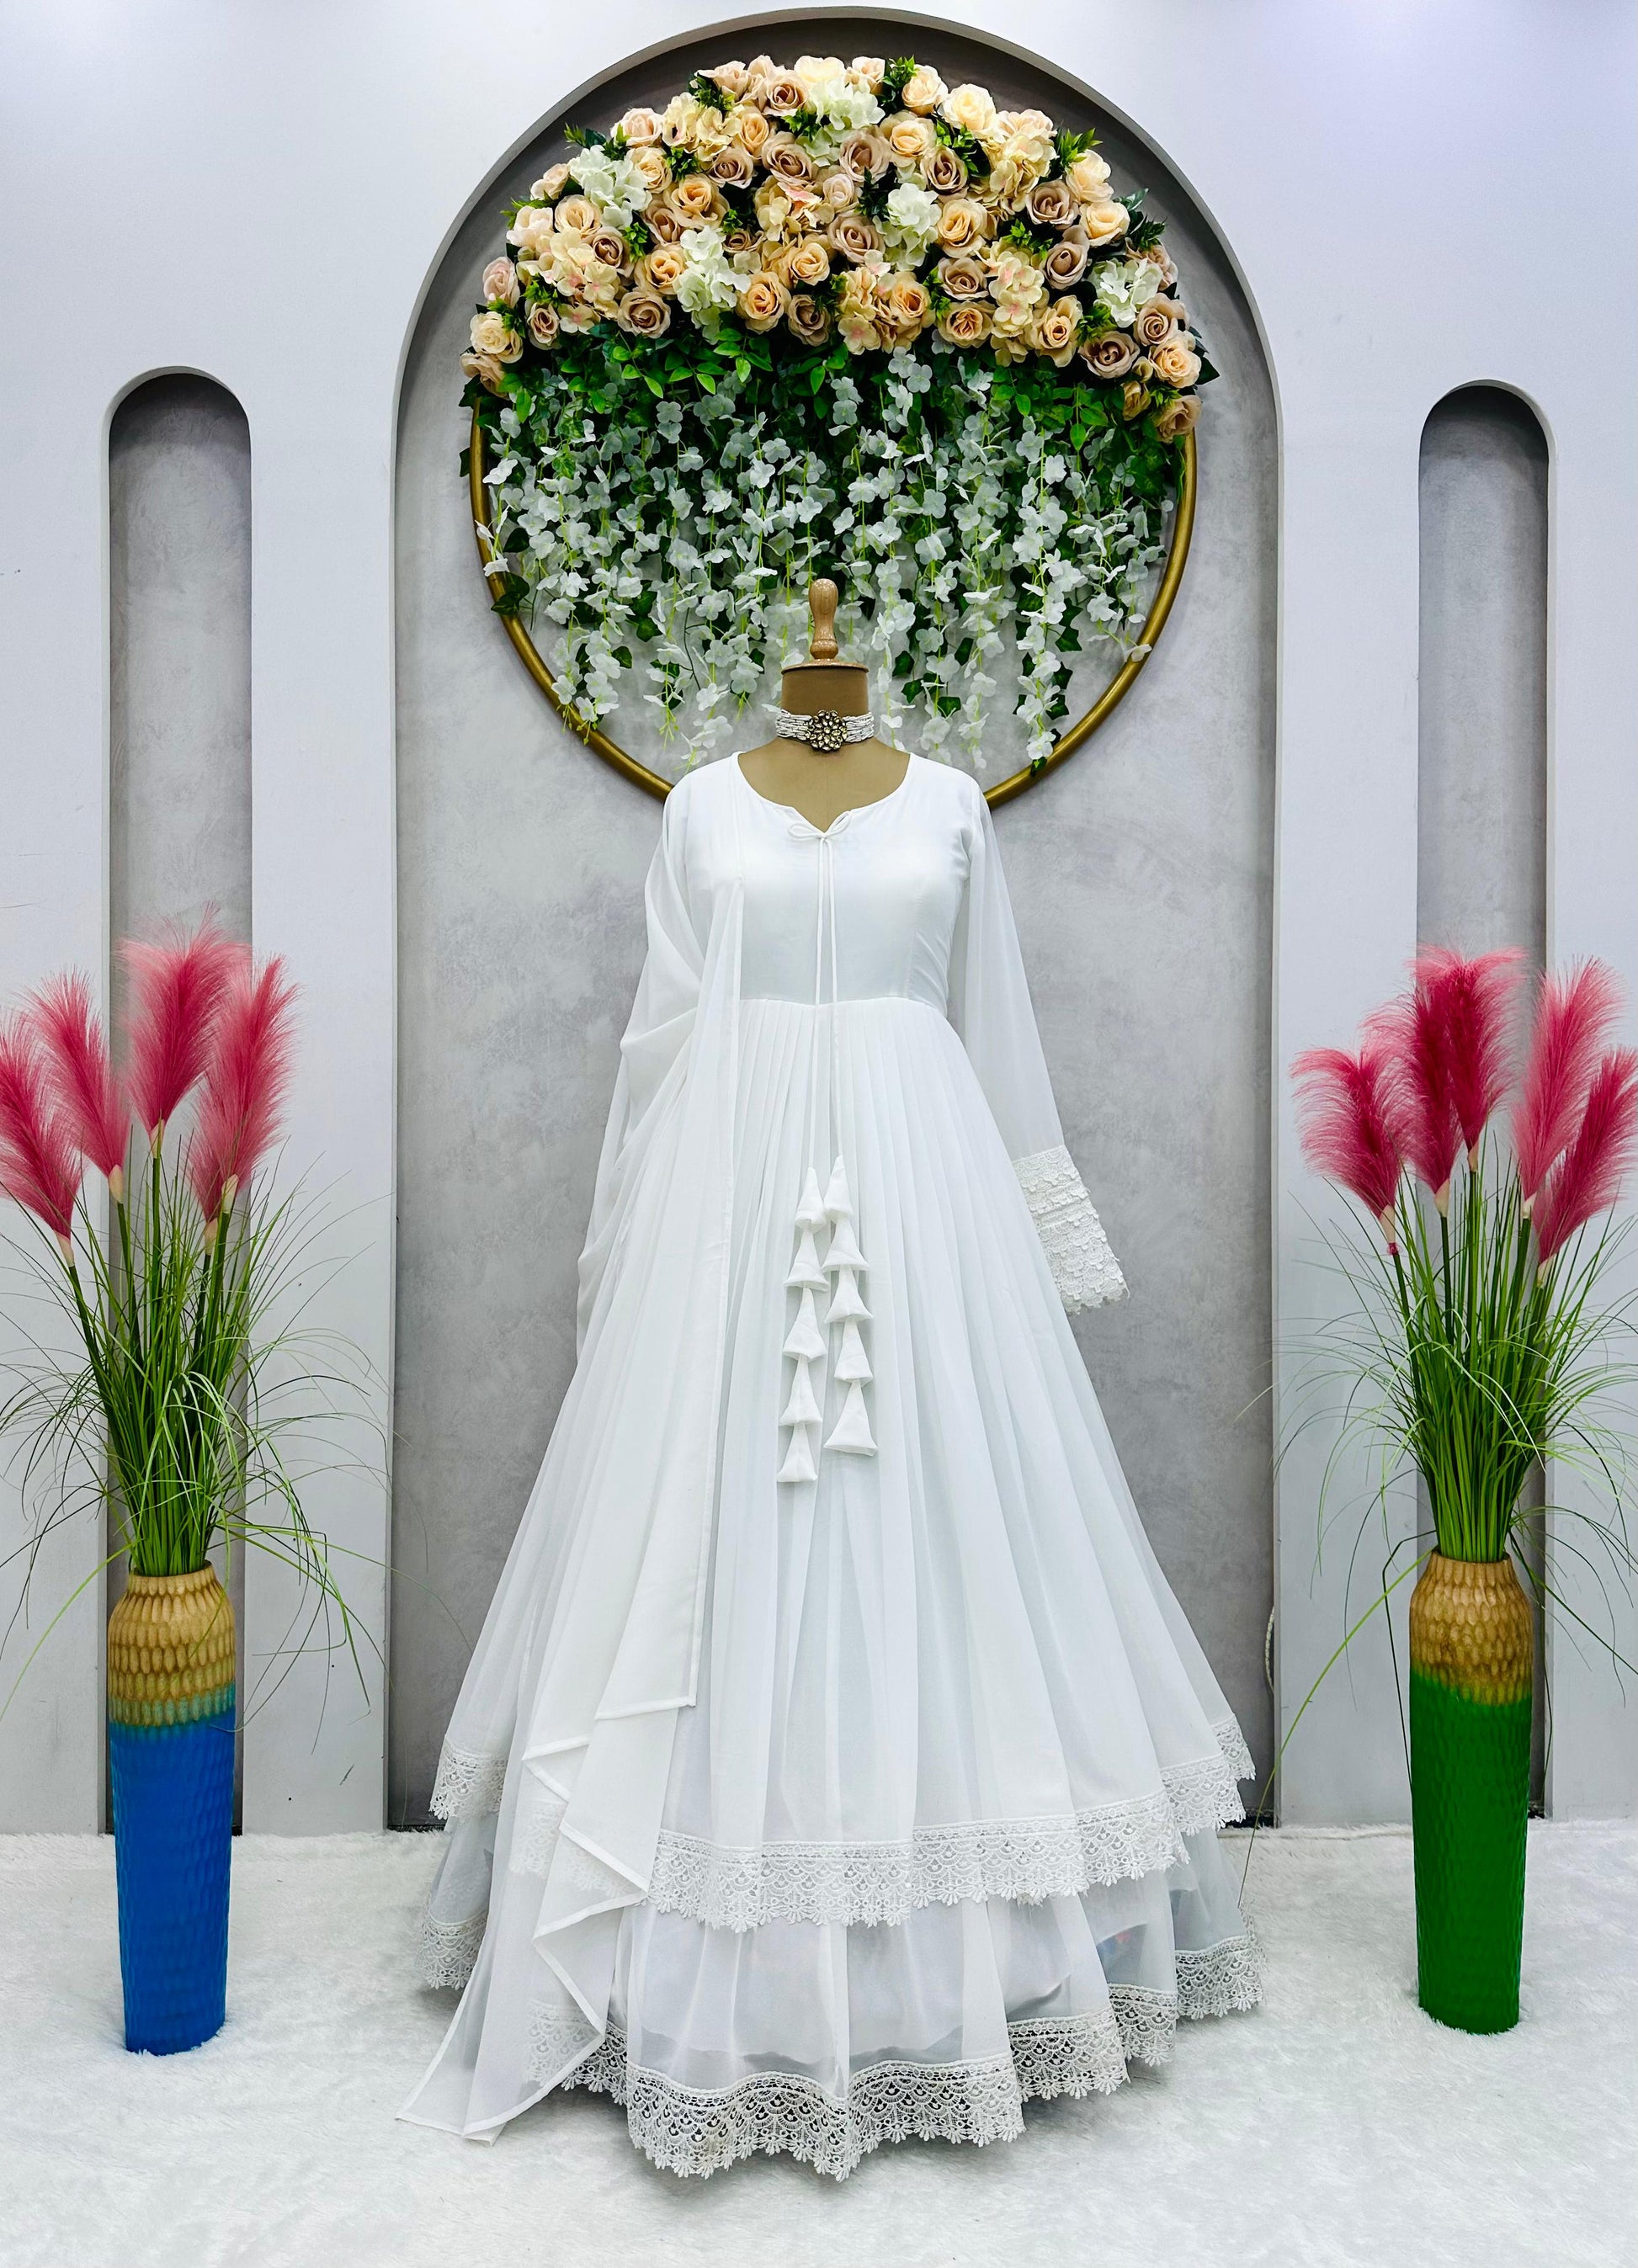 LookGold Women Gown White Dress - Buy LookGold Women Gown White Dress  Online at Best Prices in India